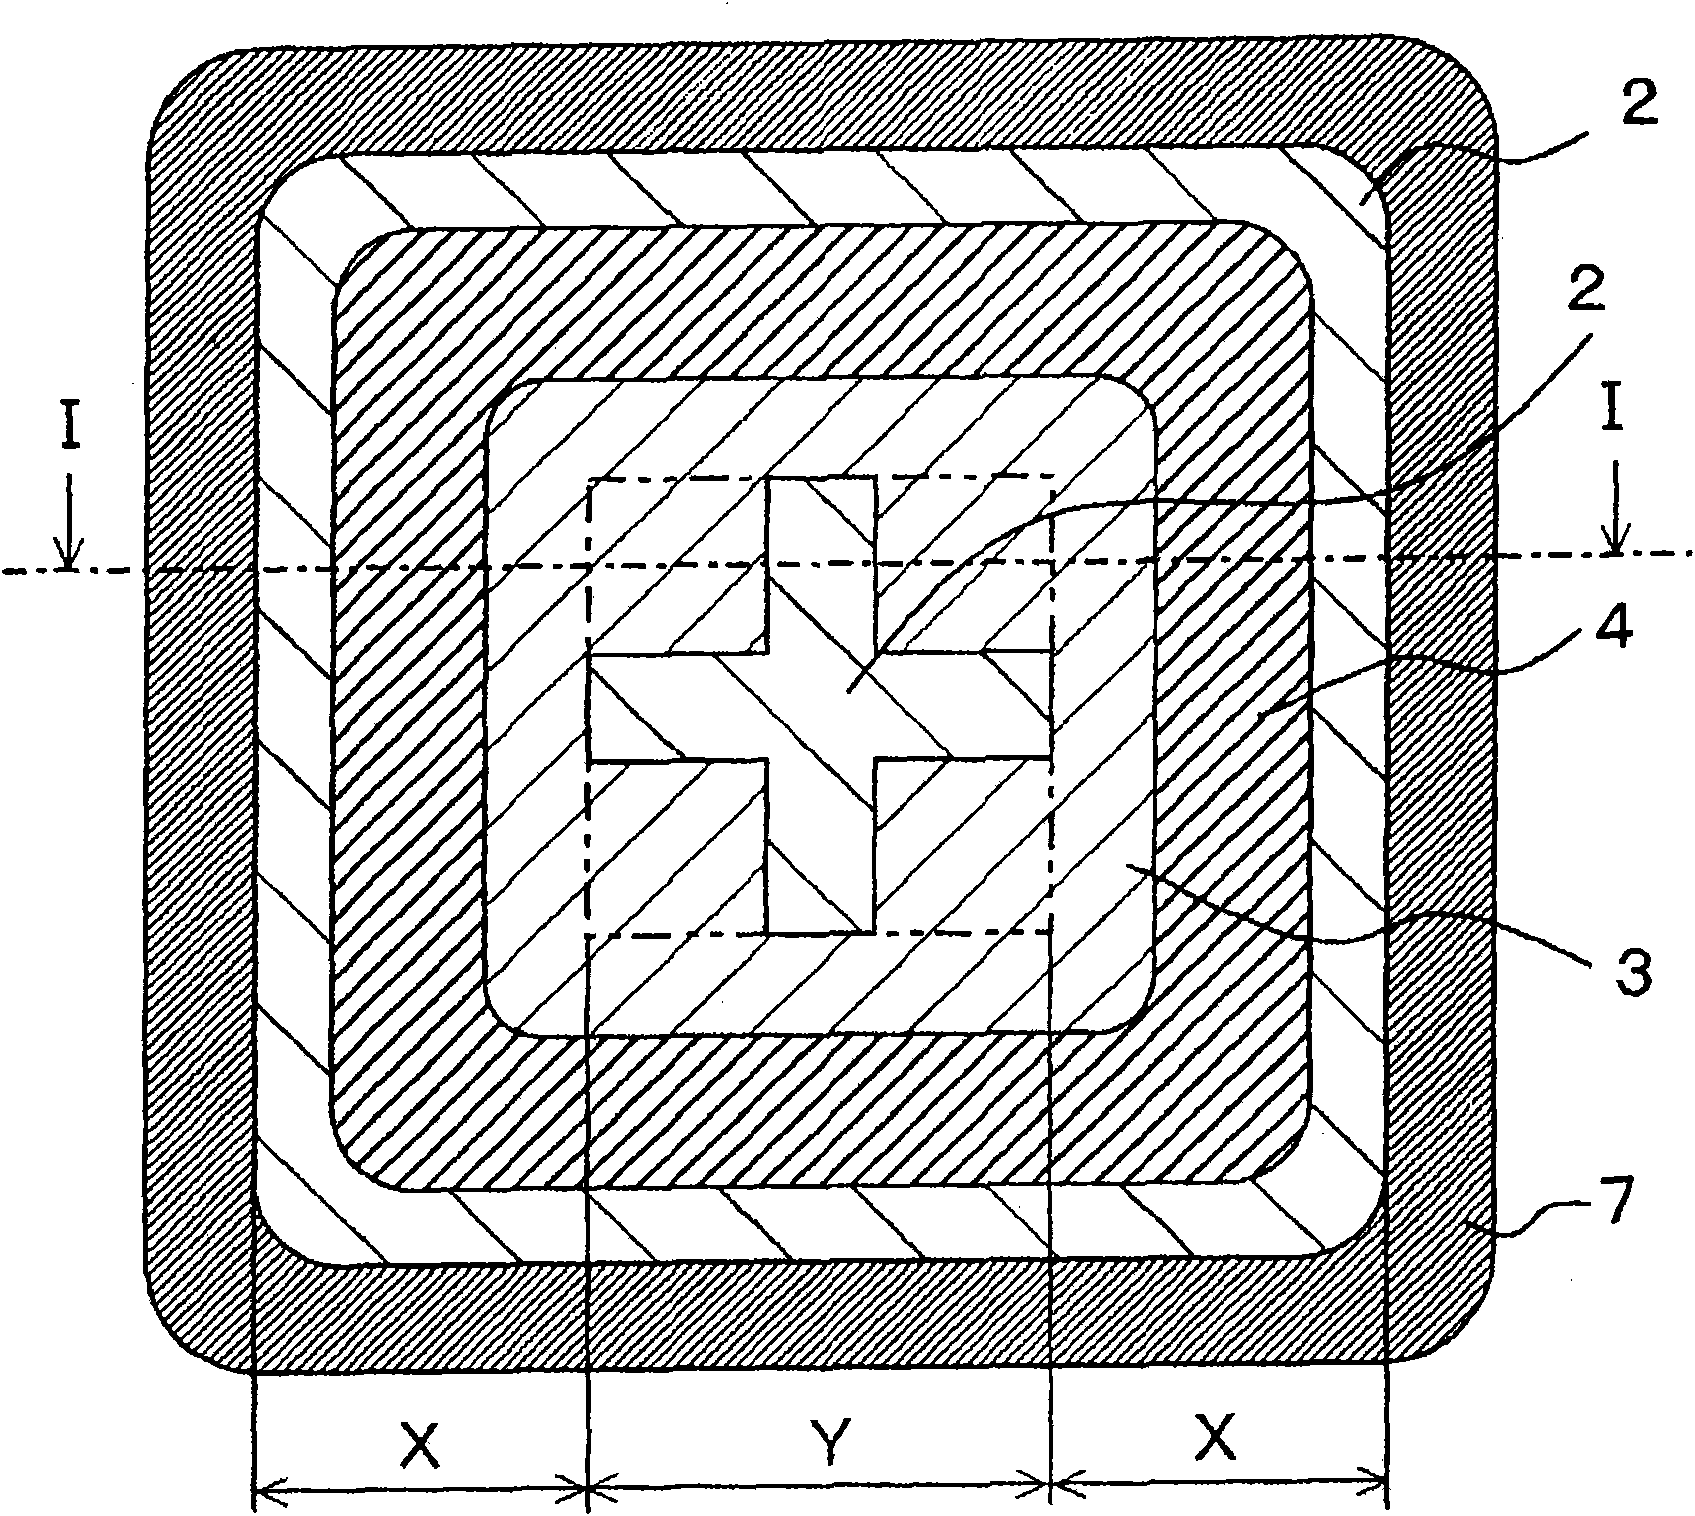 Silicon carbide semiconductor device